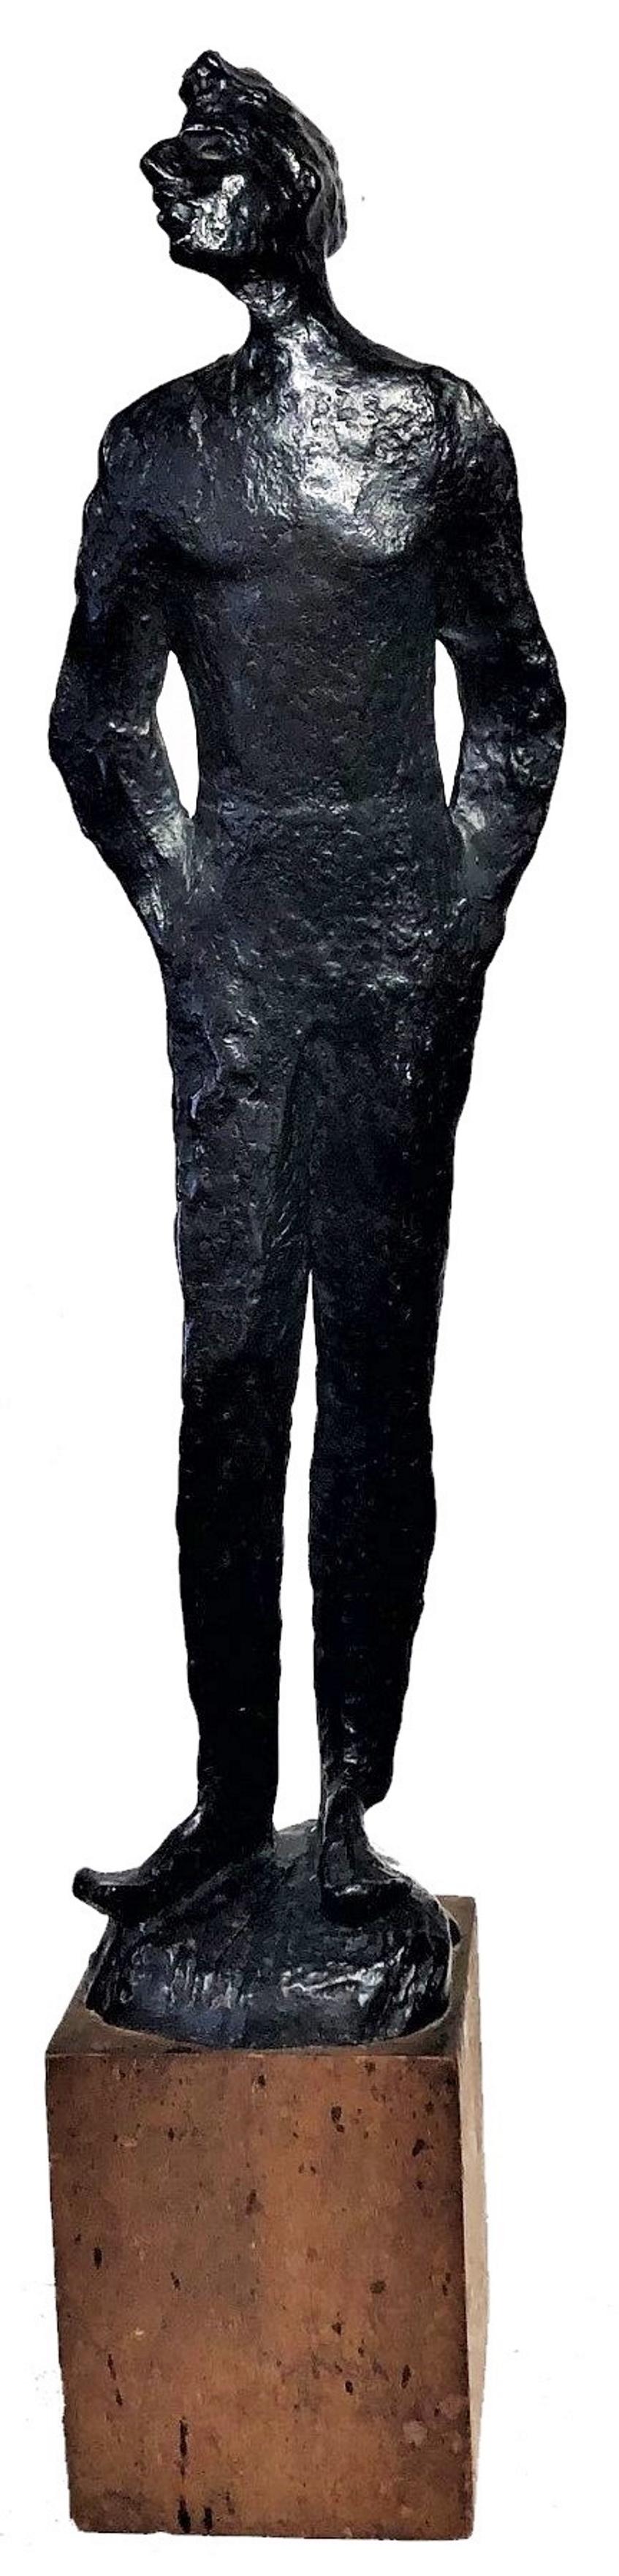 À PROPOS DE
Cette magnifique sculpture Morderne du milieu du siècle représentant un homme debout est clairement influencée par l'un des plus importants sculpteurs du XXe siècle, Alberto Giacometti - sculpteur, peintre, dessinateur et graveur suisse,